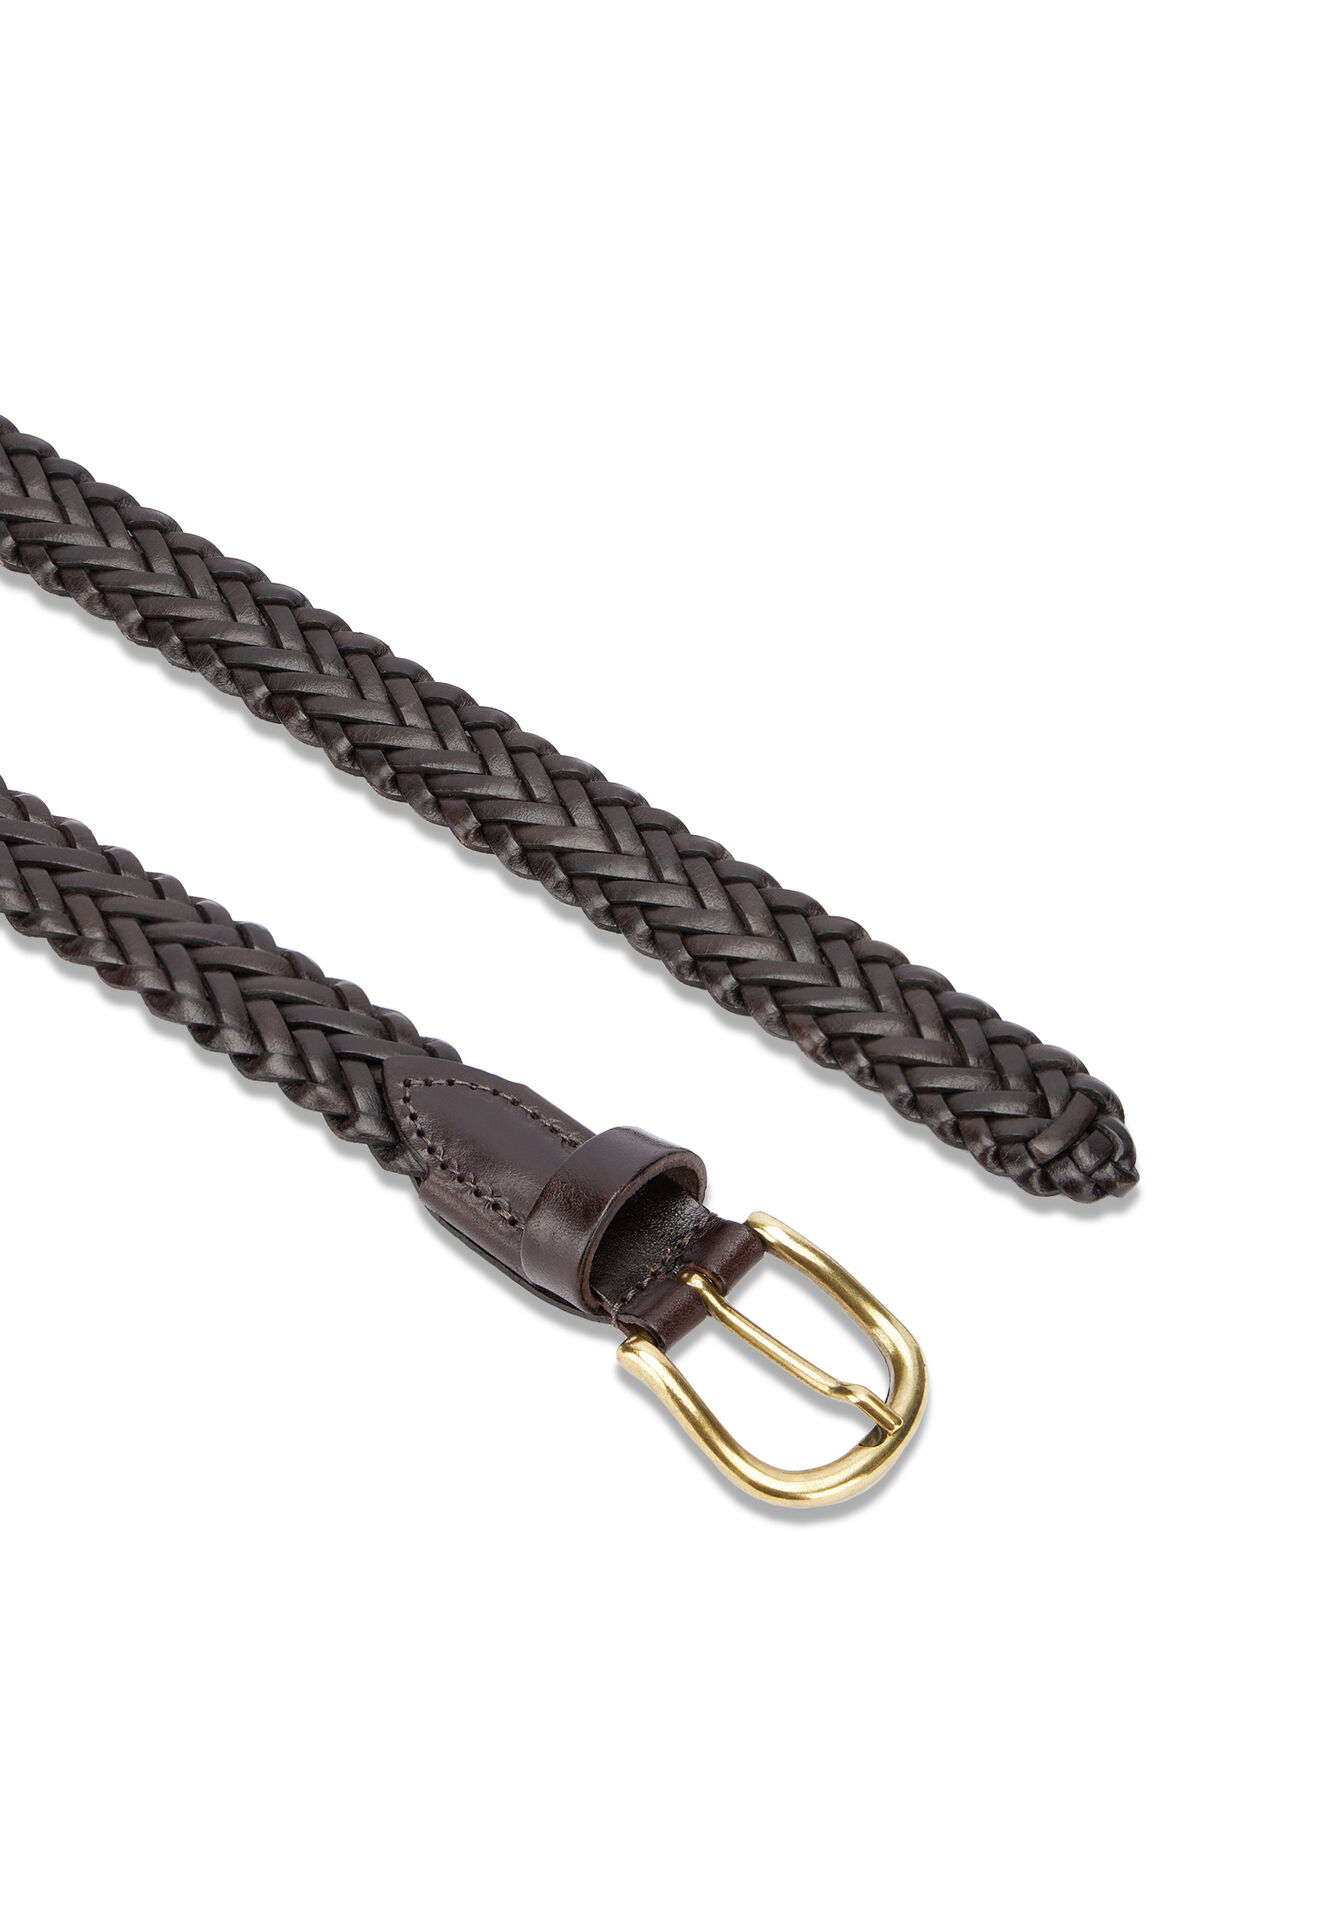 Braided belt in Dark brown: Luxury Italian Accessories